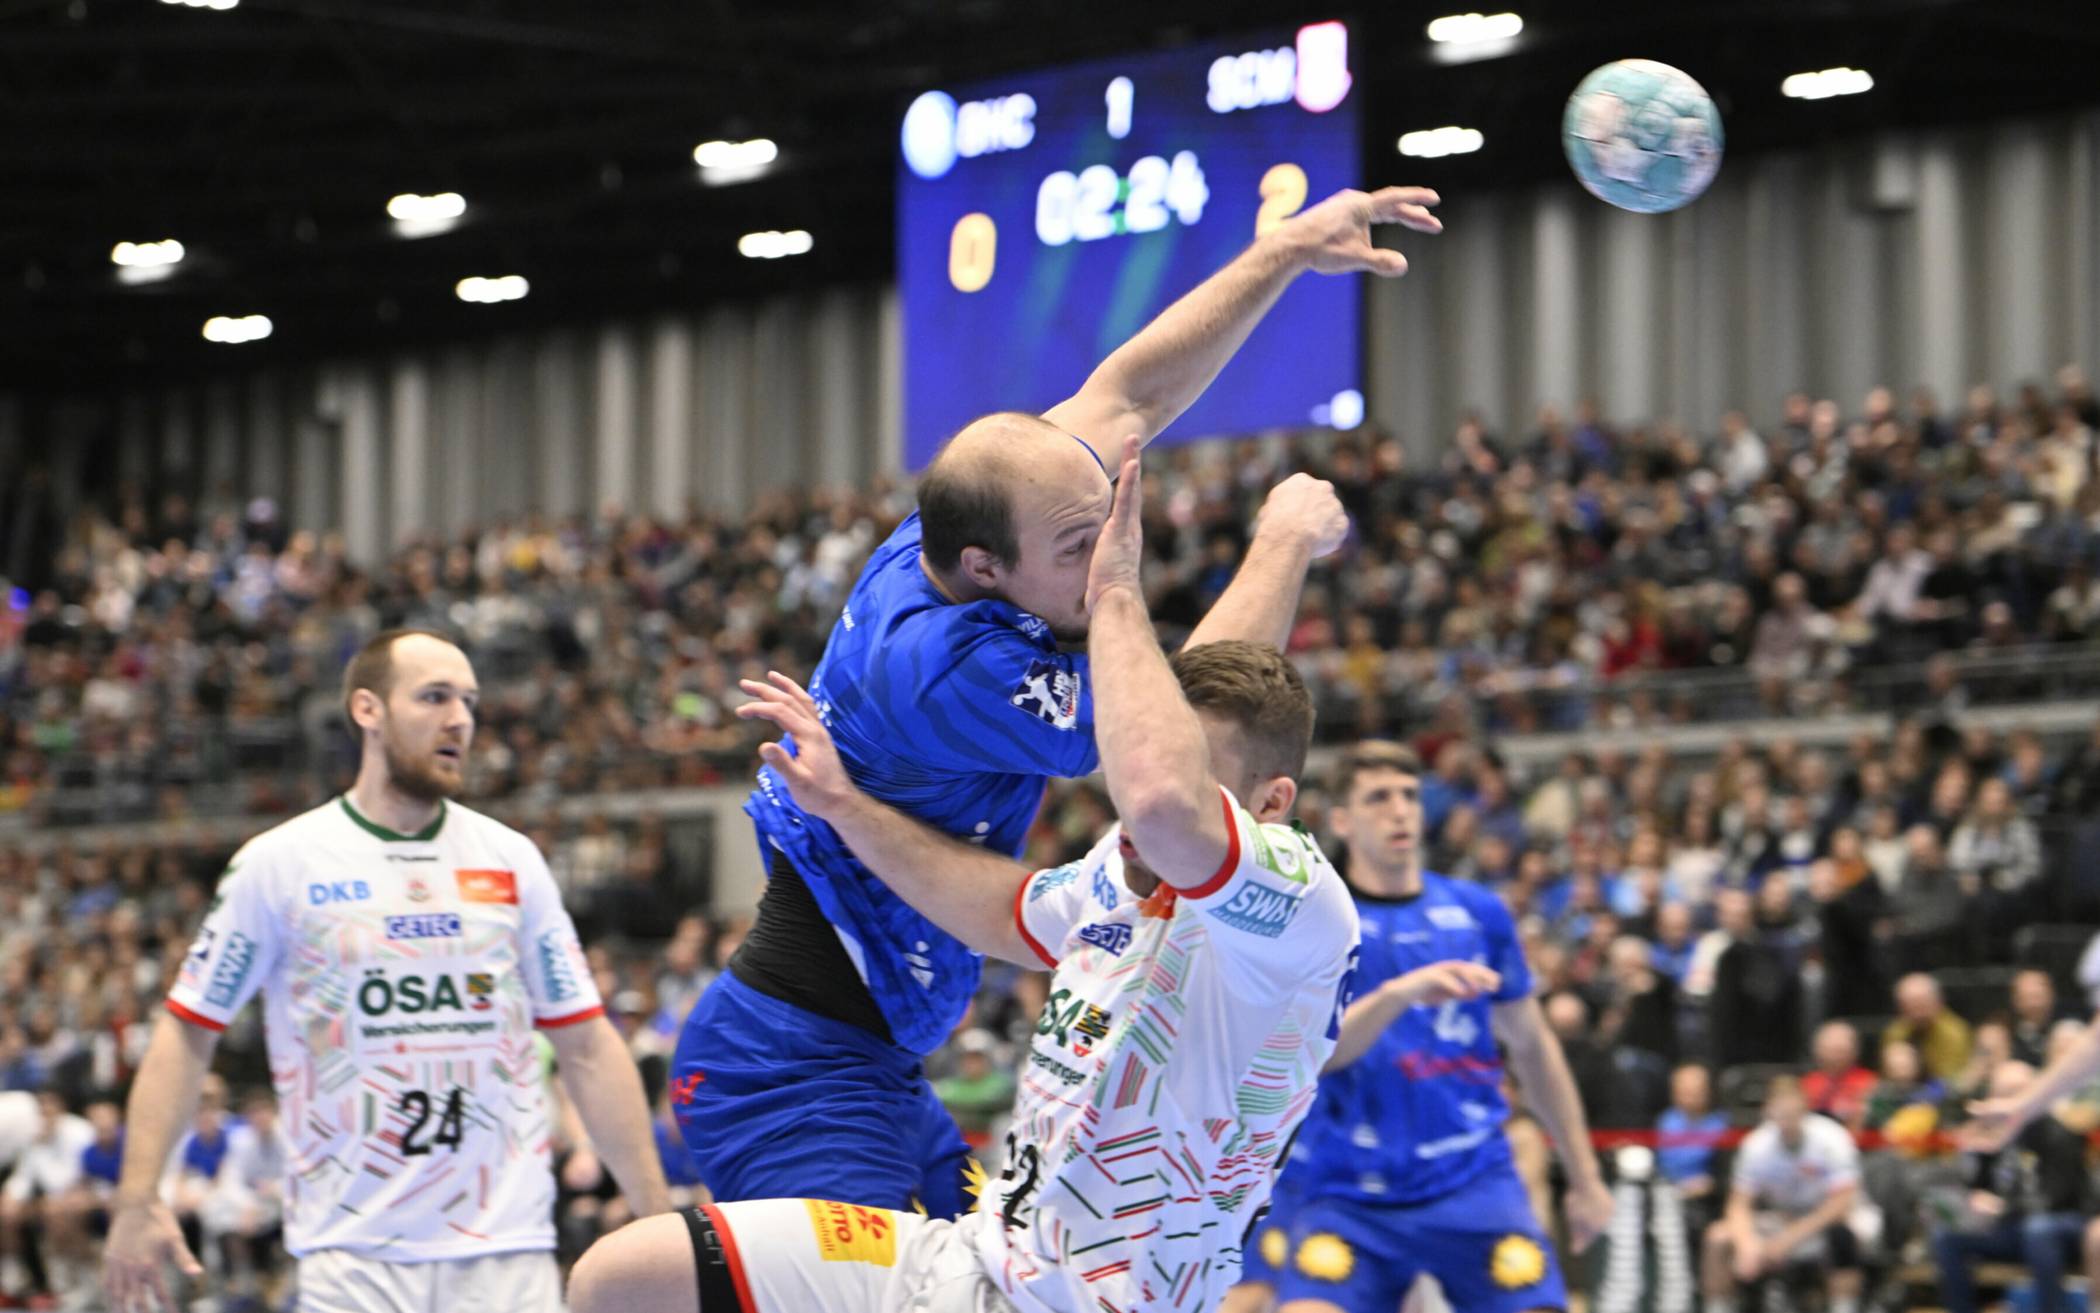 Bilder: Handball-Bundesligist BHC unterliegt Magdeburg​